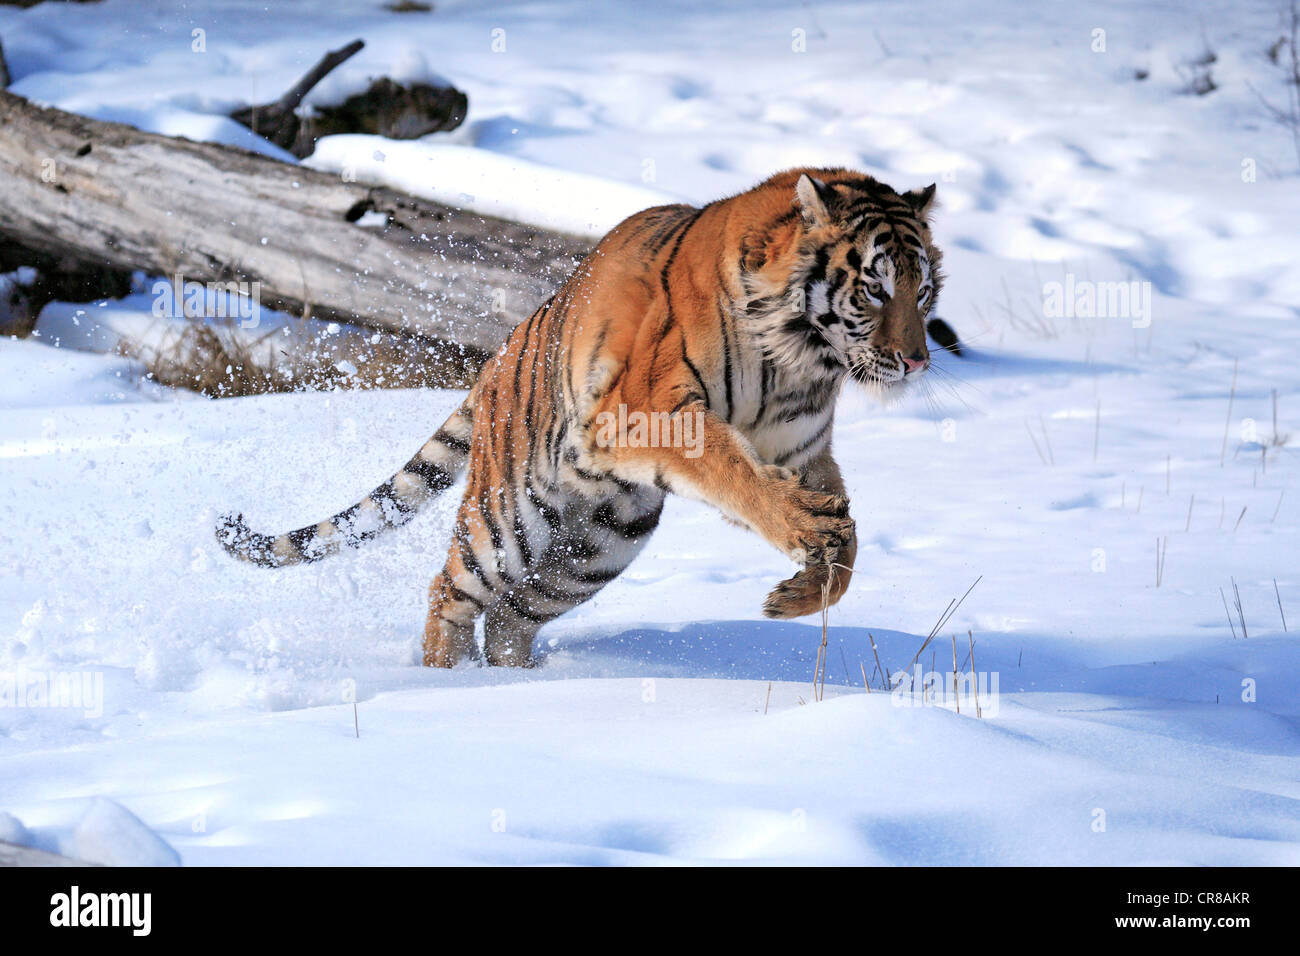 Siberian Tiger (Panthera tigris altaica), jumping, snow, winter, Asia Stock Photo